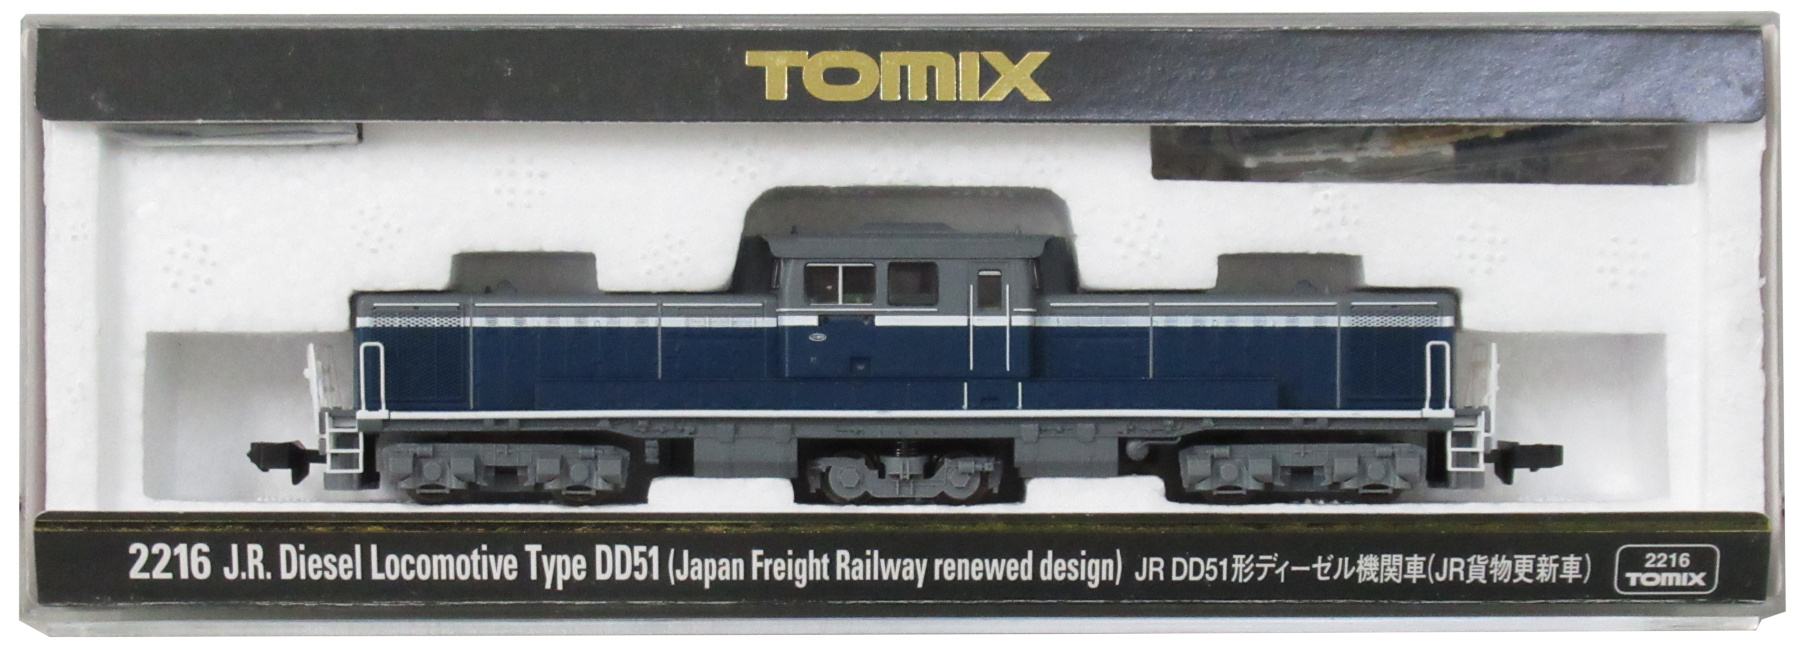 公式]鉄道模型(2216JR DD51形 ディーゼル機関車 (JR貨物更新車))商品